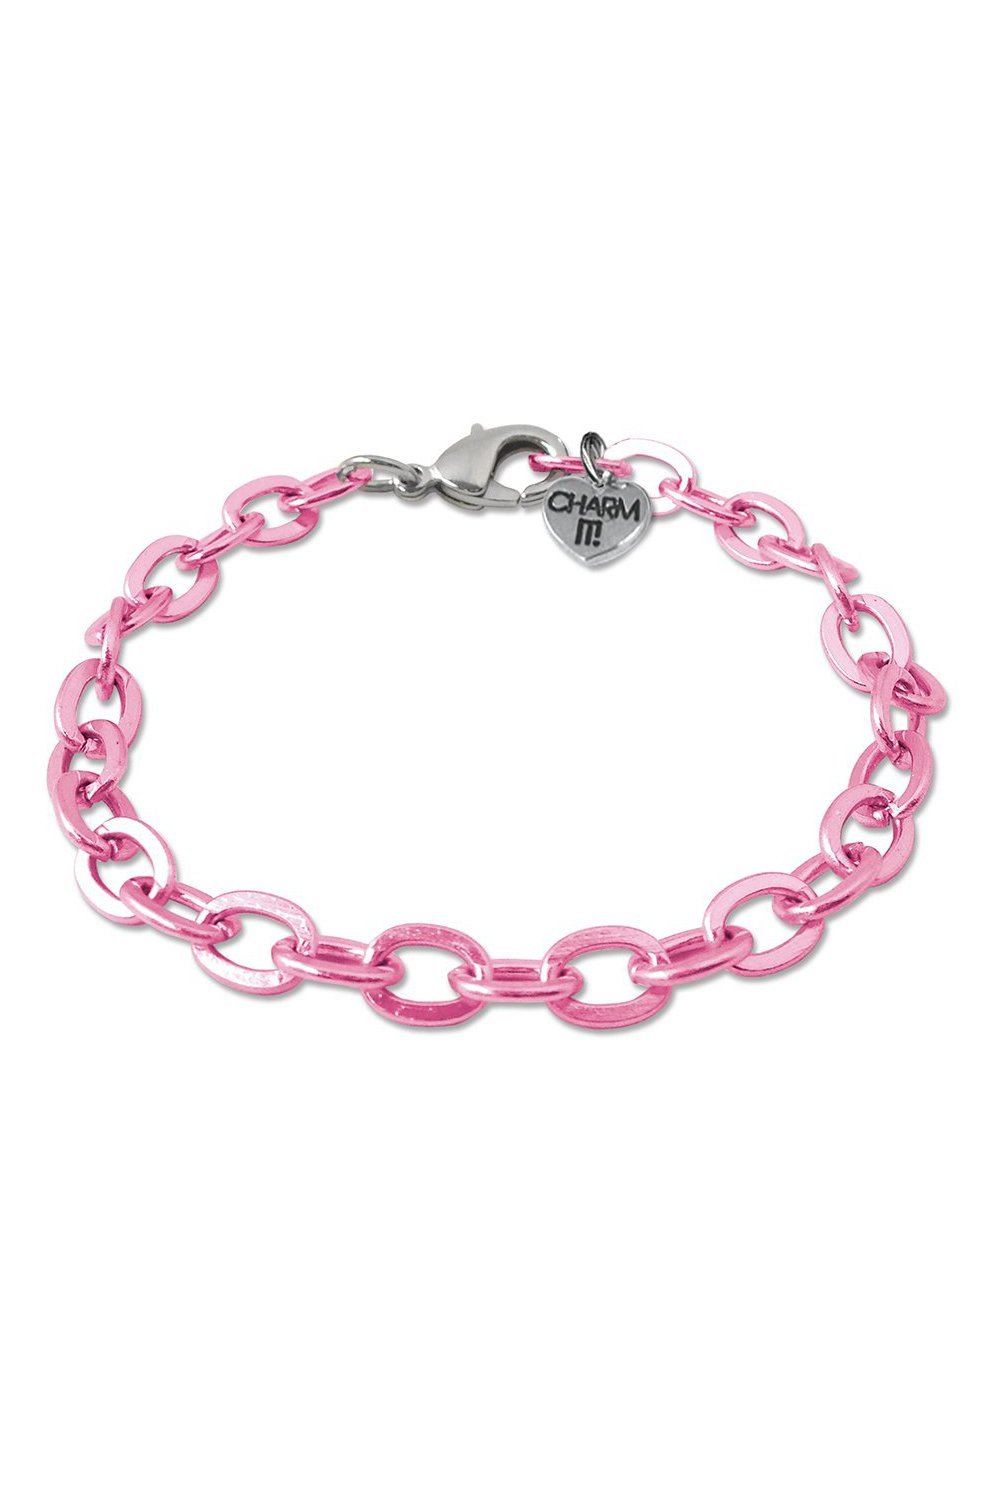 Pink Chain Link Bracelet - Tea for Three: A Children's Boutique-New Arrivals-TheT43Shop